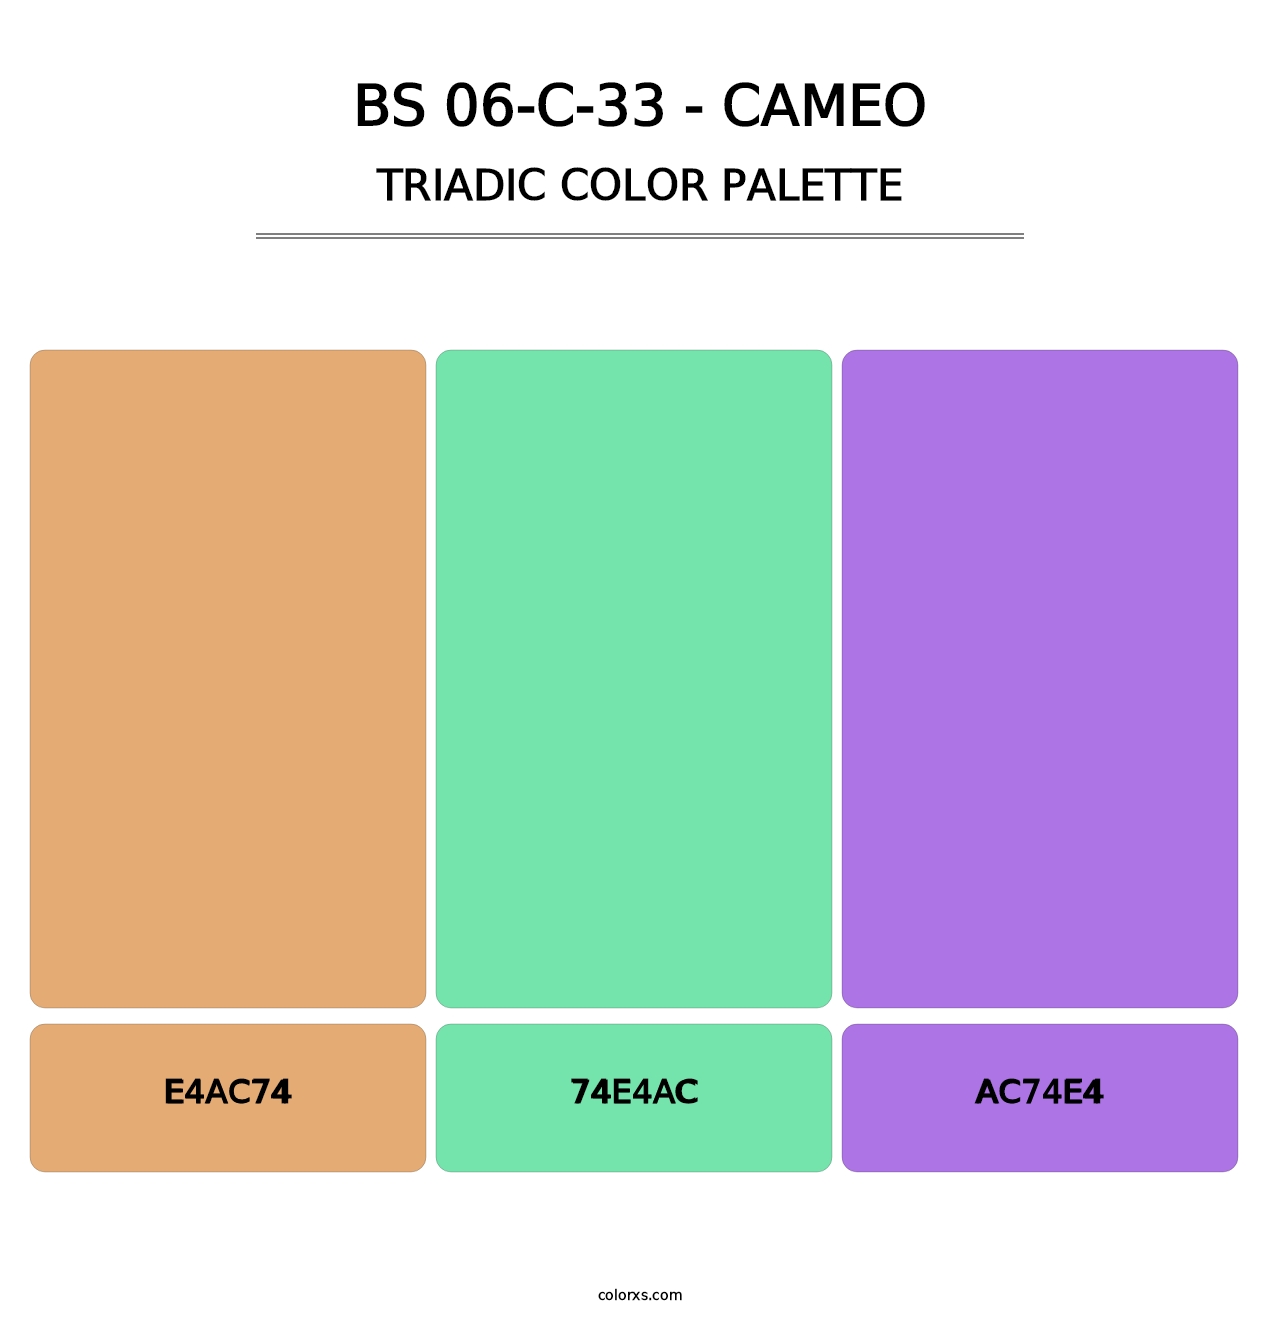 BS 06-C-33 - Cameo - Triadic Color Palette